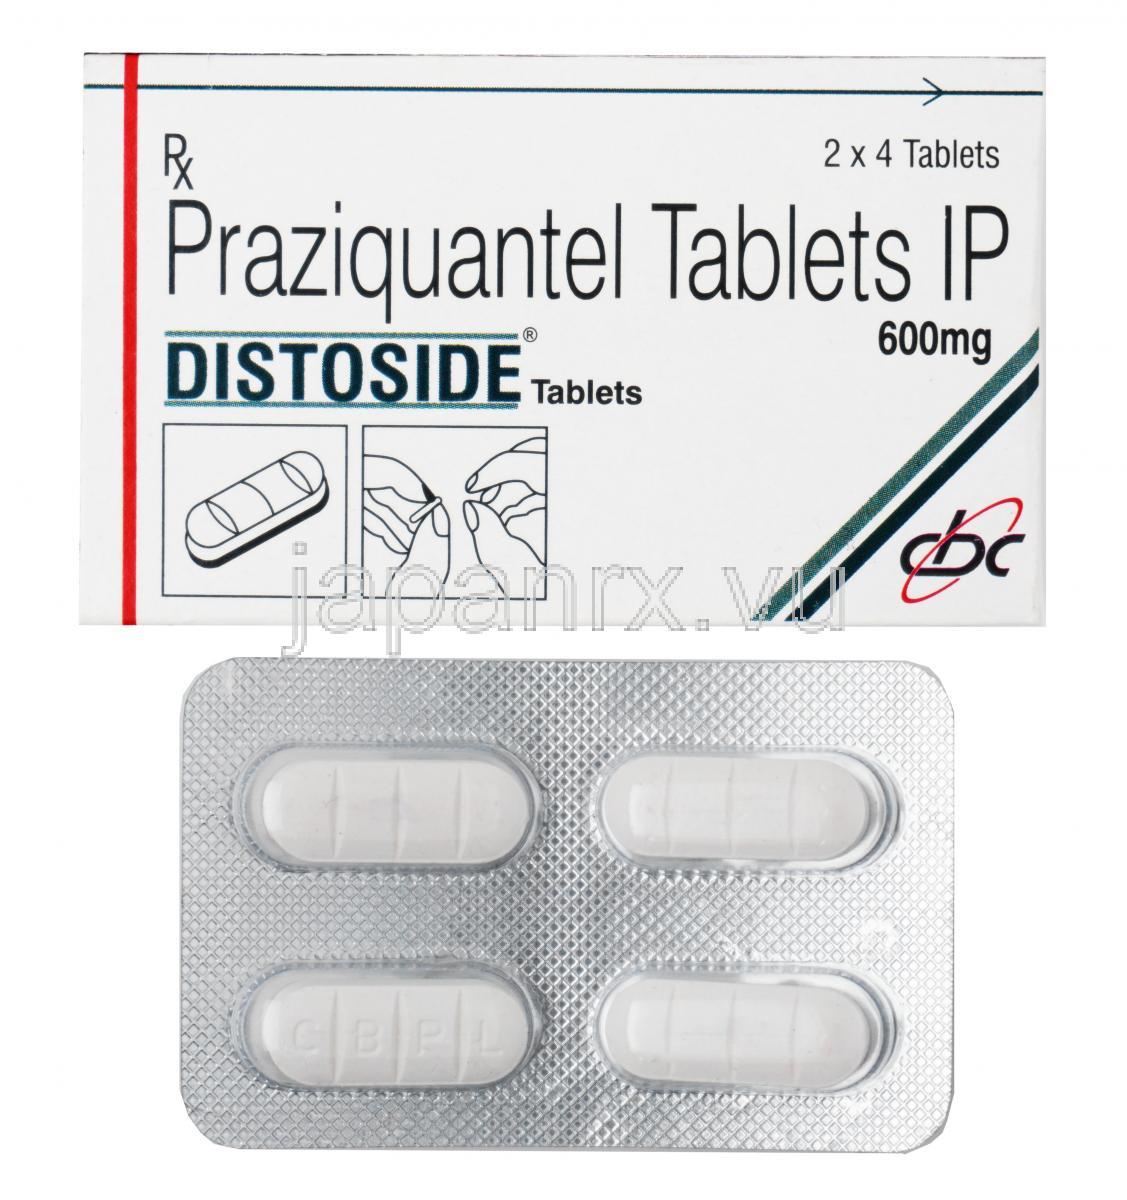 プラジカンテル  600mg (Distoside) Chandra Bhagat Pharma 箱、錠剤